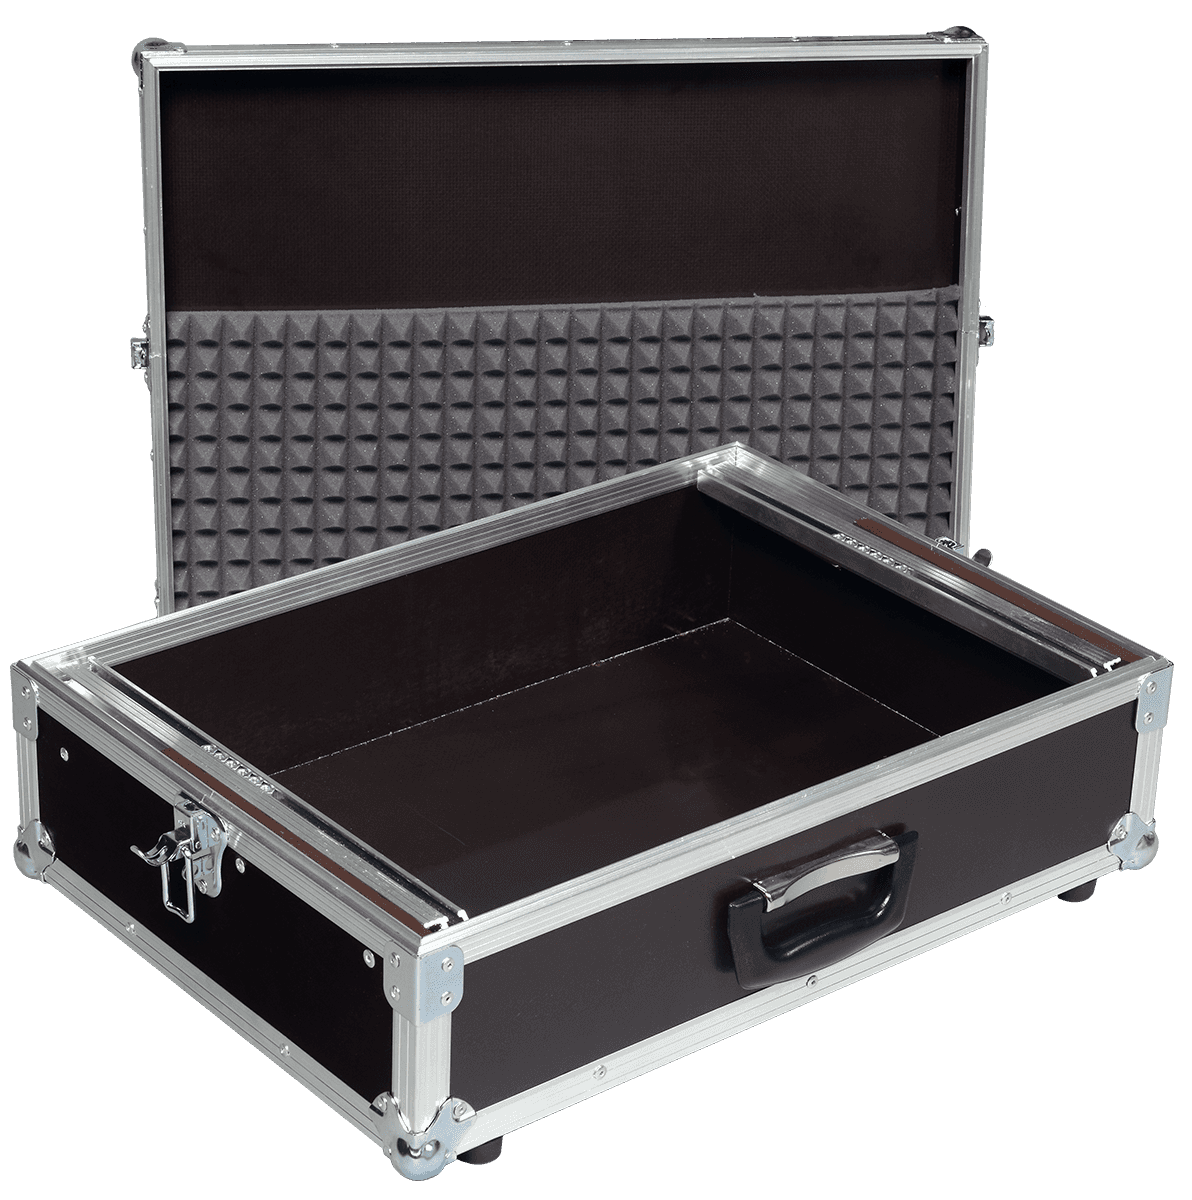 Algam Mixer-8u - Mixer case - Variation 2